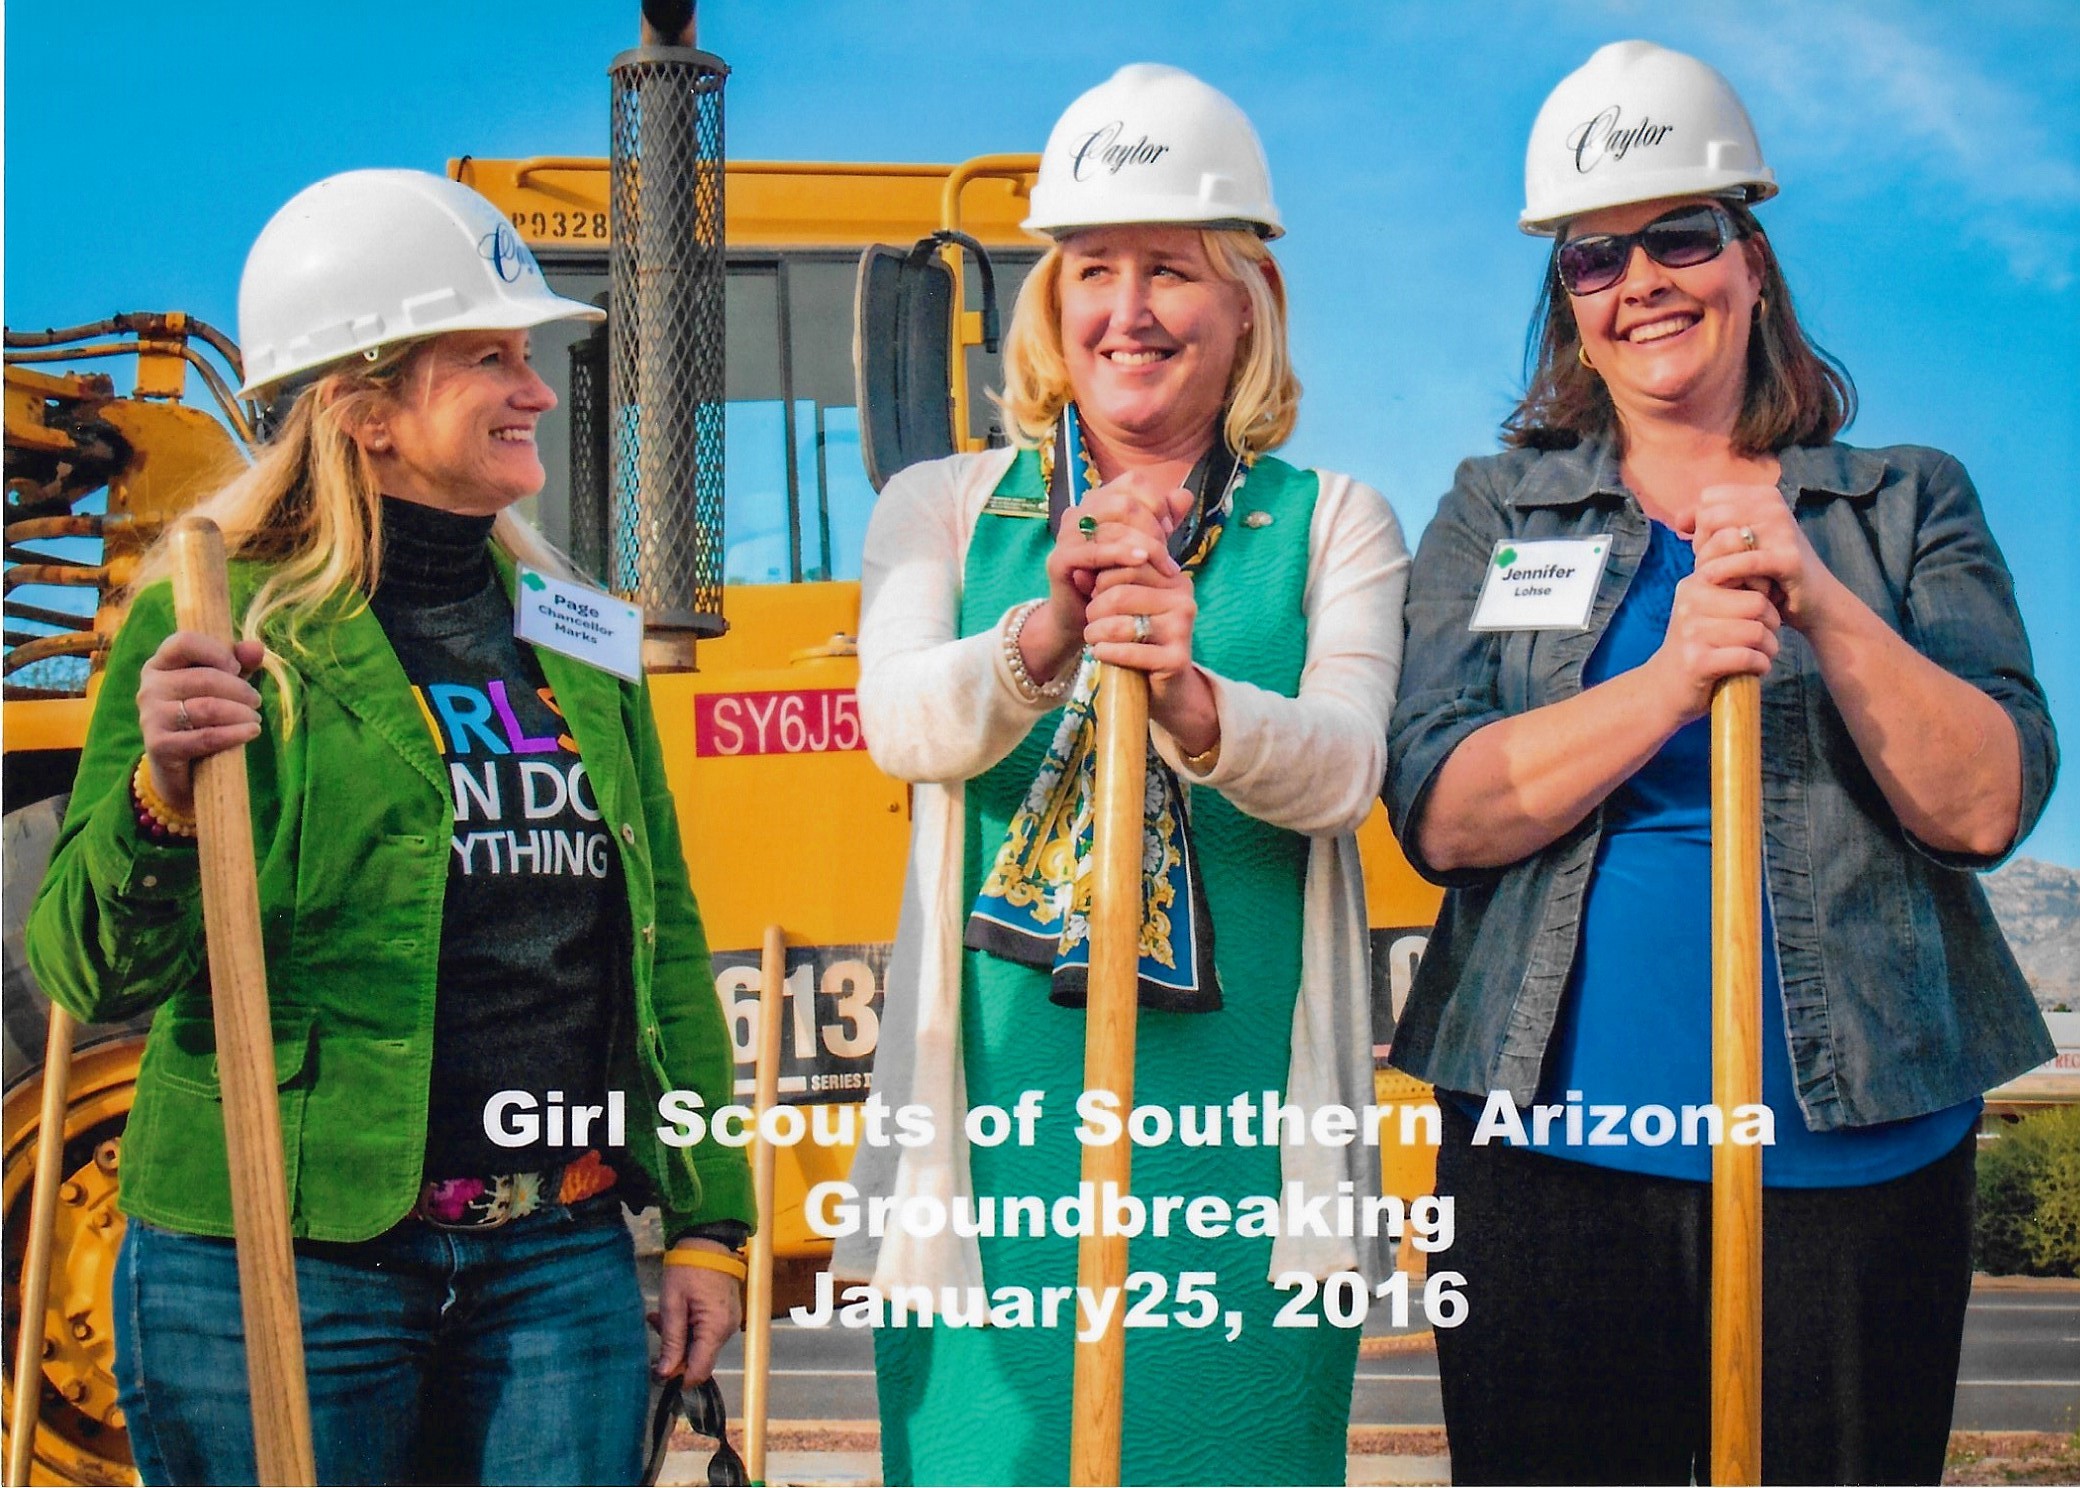 Jennifer Lohse at Girl Scouts of Southern Arizona Groundbreaking January 2016